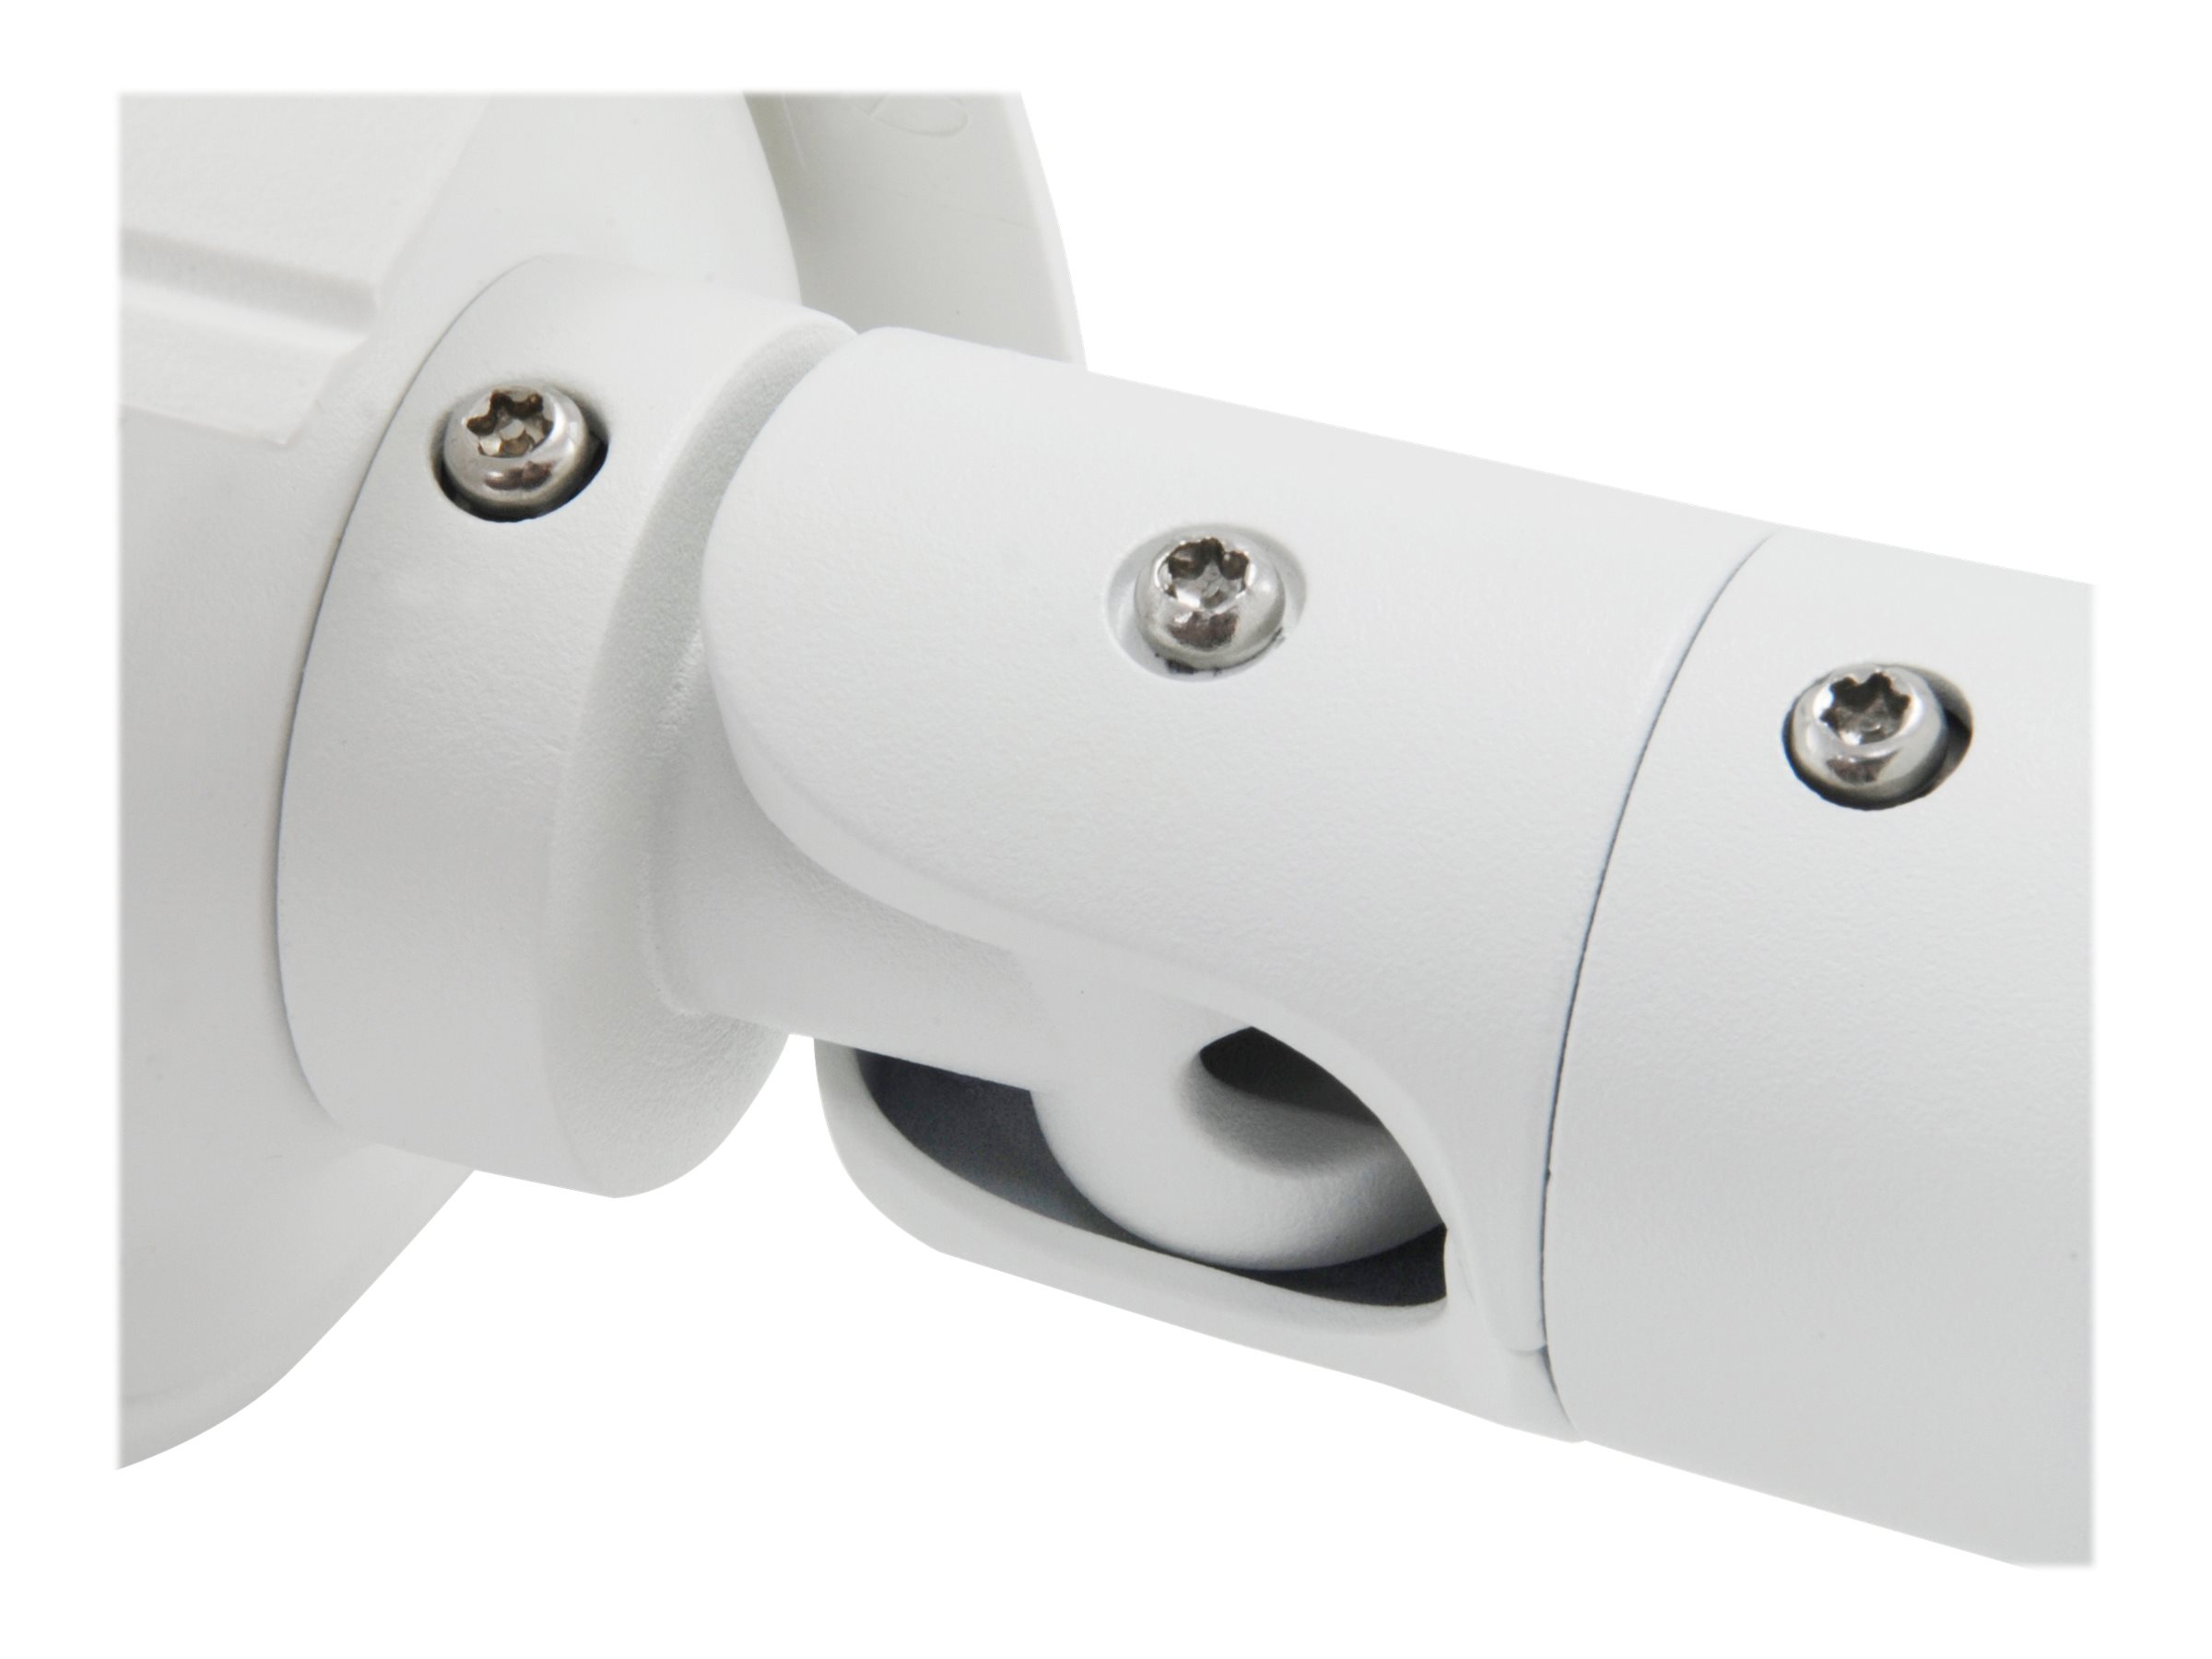 LevelOne FCS-5092 - Netzwerk-Überwachungskamera - Außenbereich - wetterfest - Farbe (Tag&Nacht)